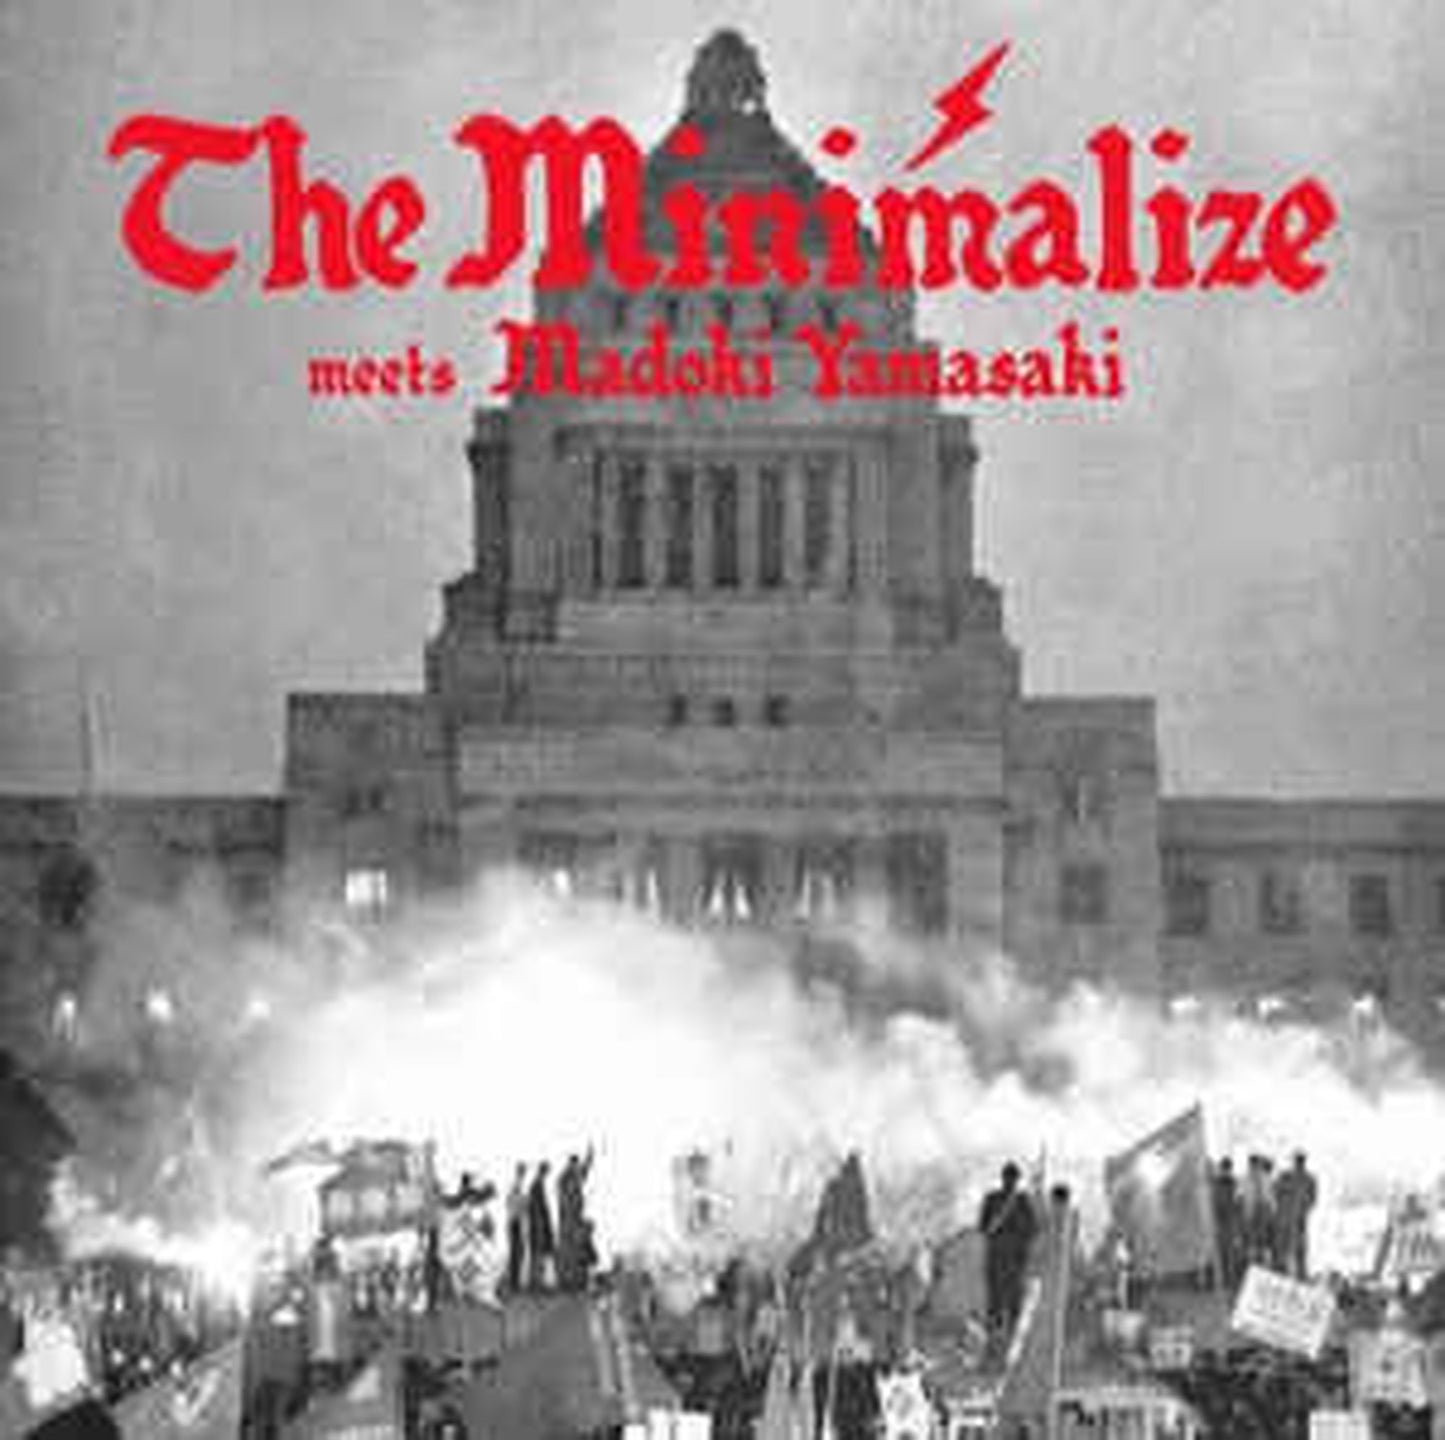 【7"】The Minimalize meets Madoki Yamasaki - 奴は再選するだろう / No lies